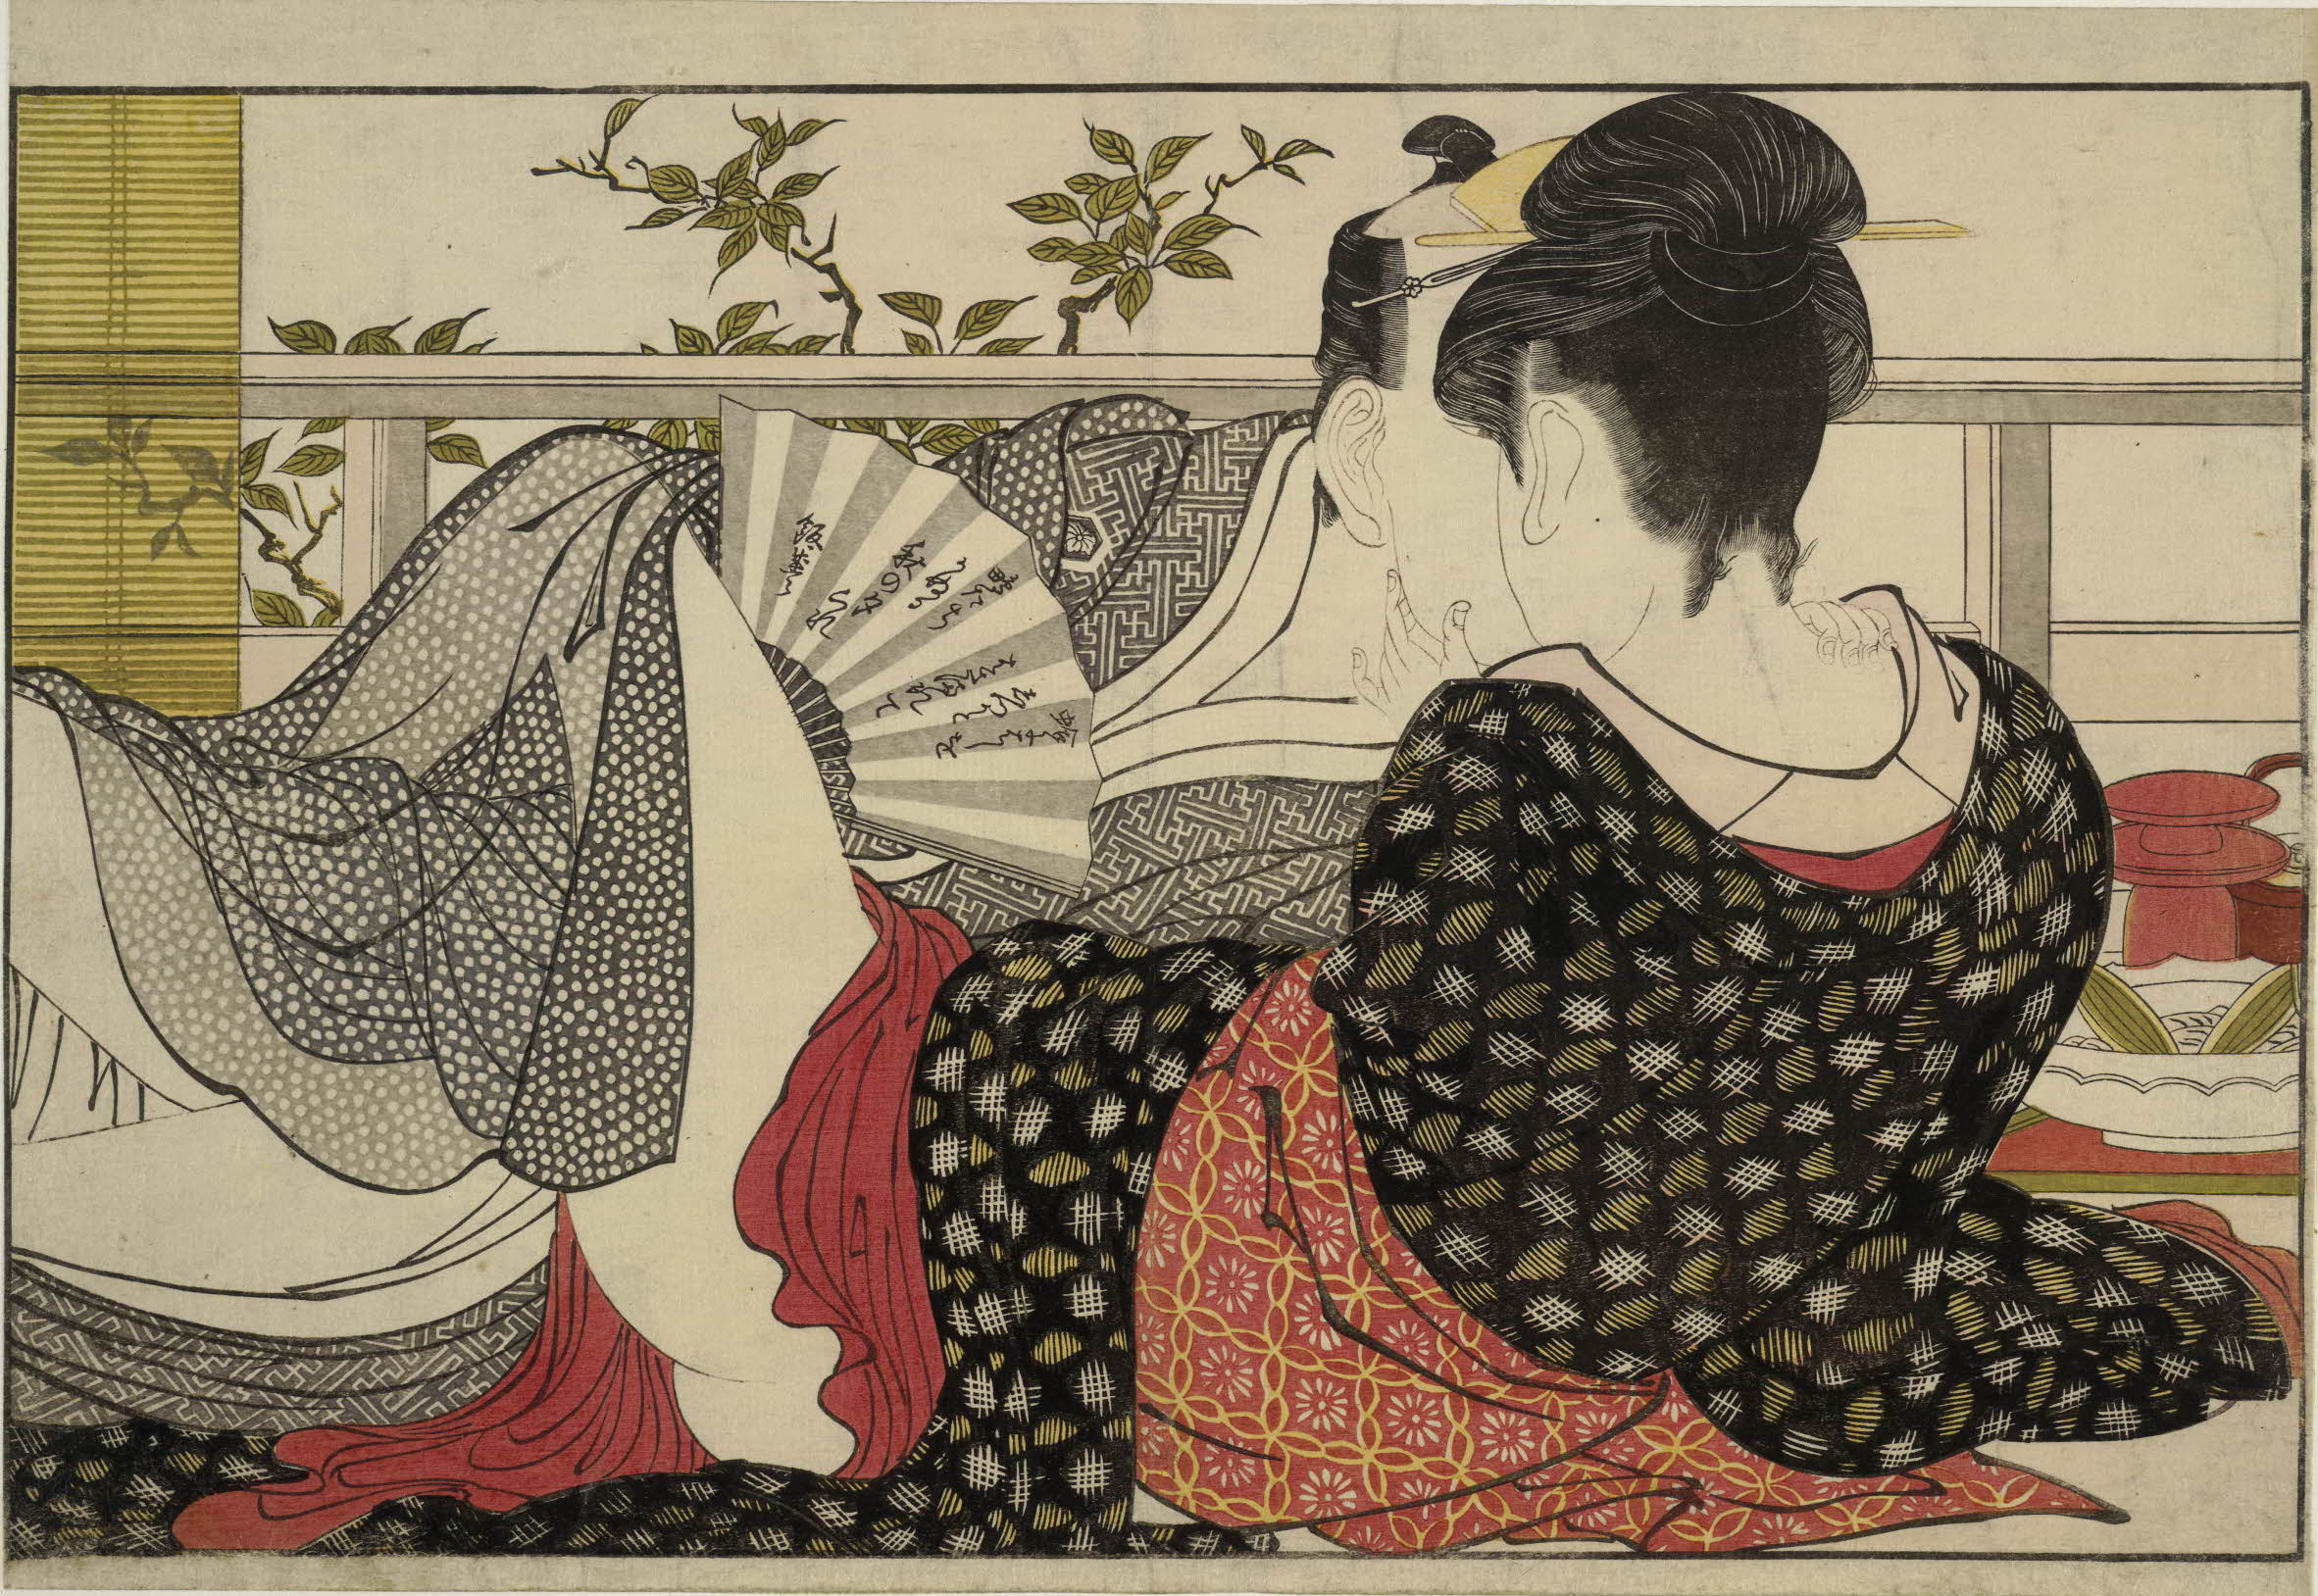 Утамакура (Поема подушки) by Kitagawa Utamaro - 1788 - 254 х 369 мм 